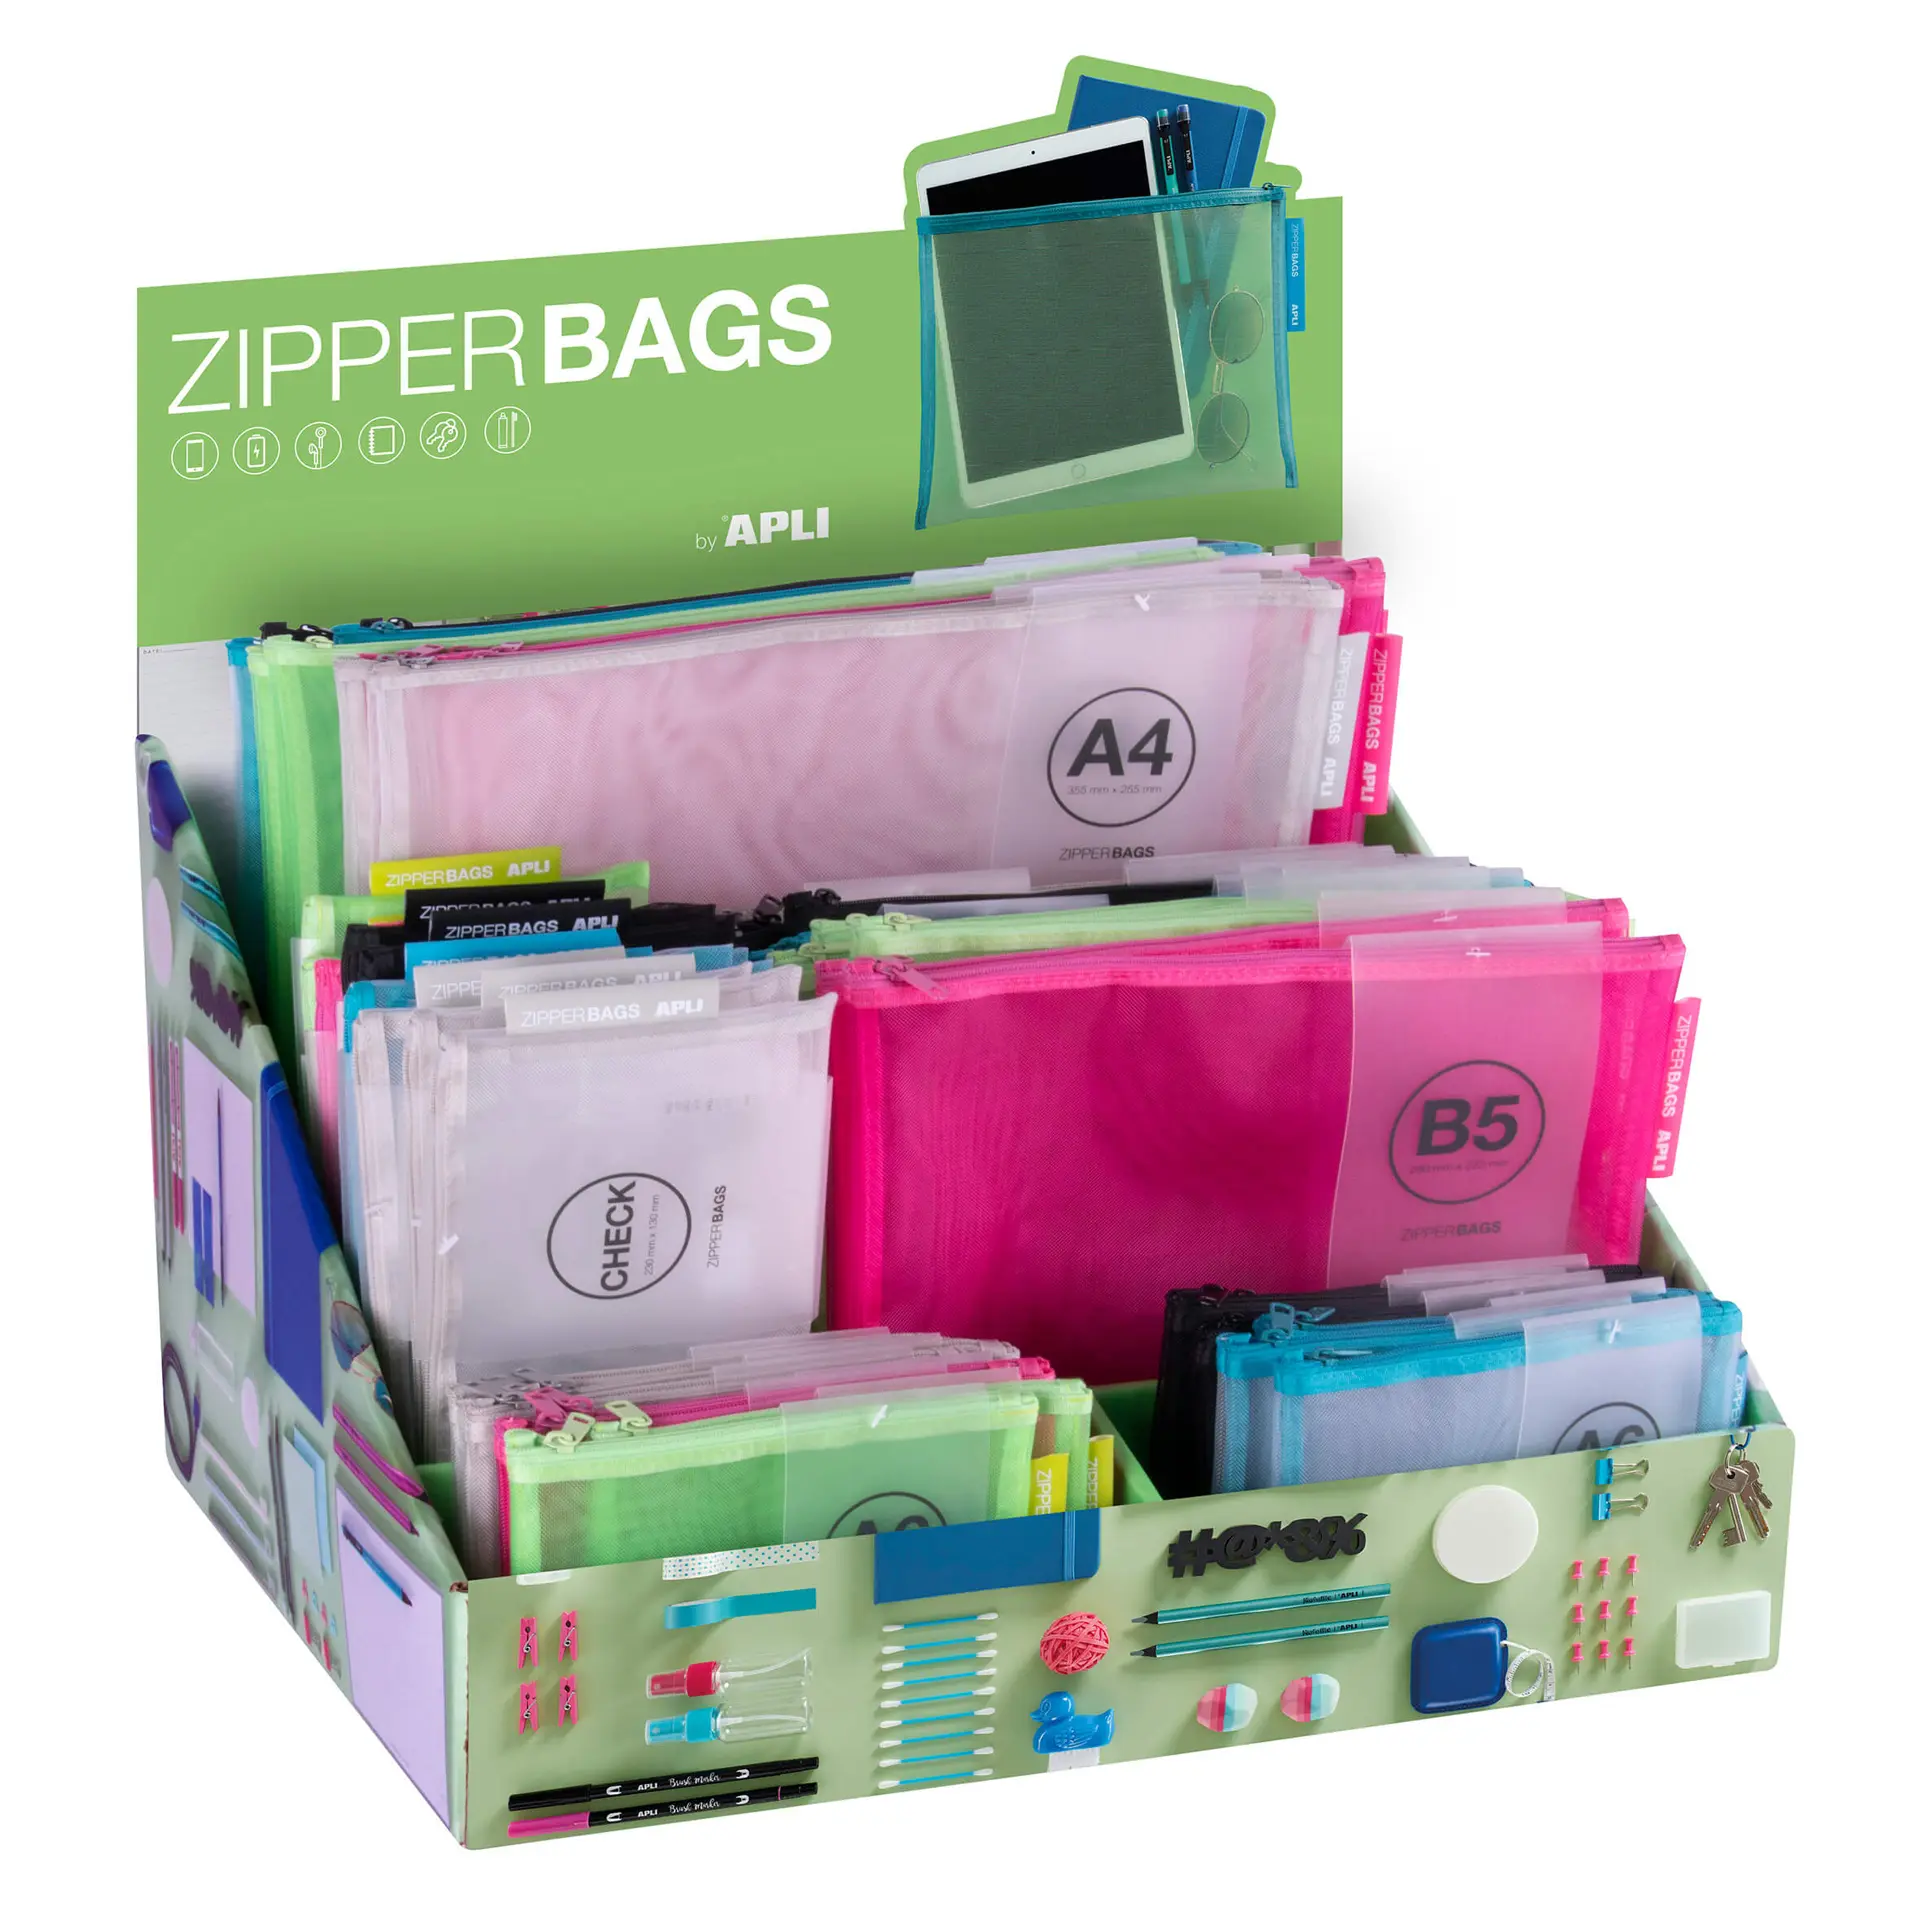 Apli Expositor Zipper Bags de Nylon - Tamaos y Colores Surtidos - Alta Calidad y Durabilidad - Idea